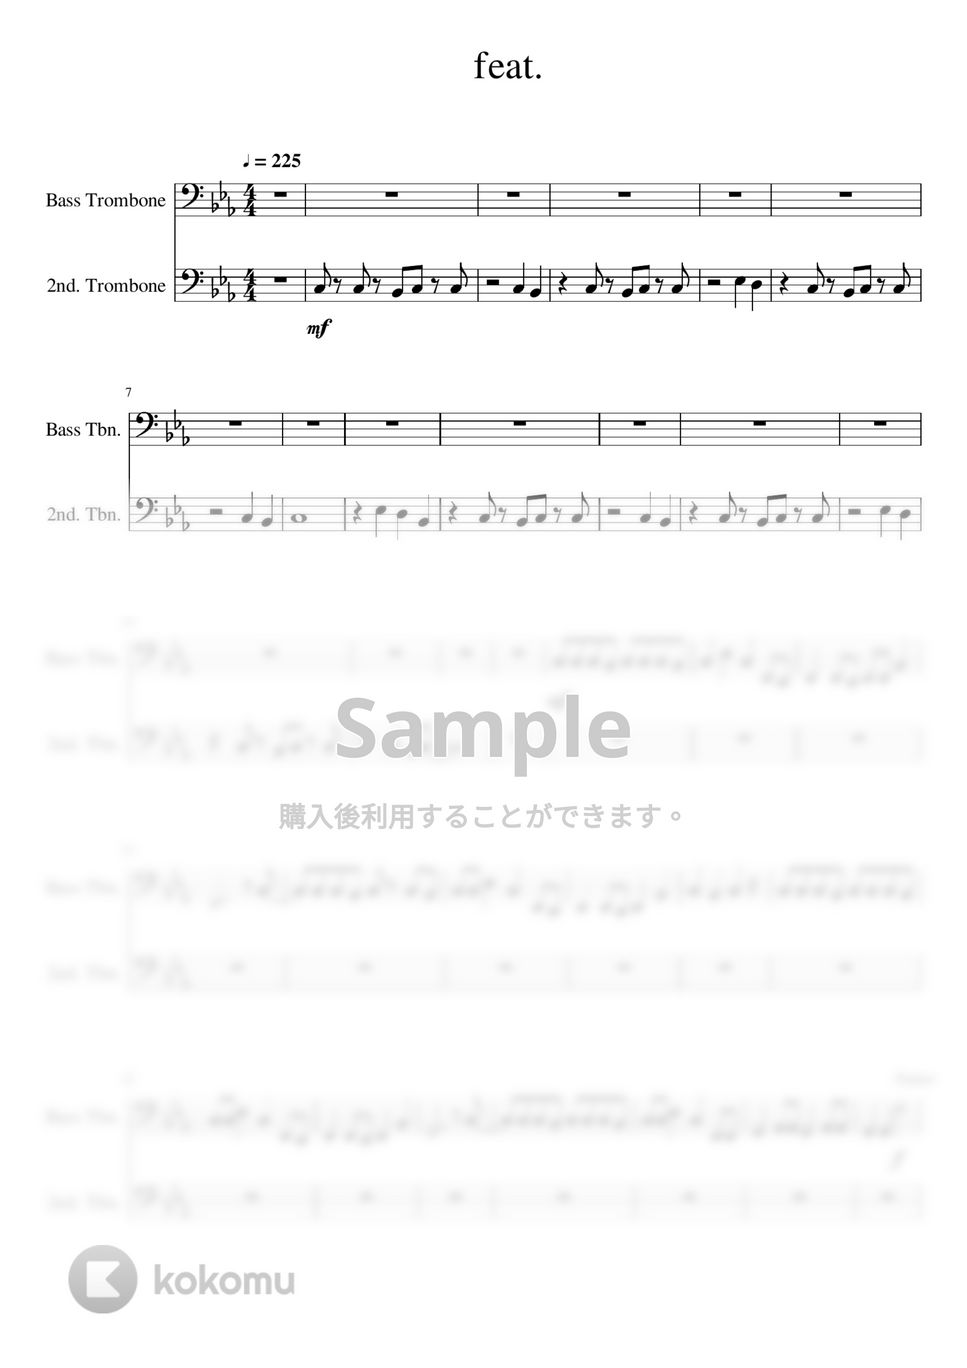 すりぃ - エゴロック (-Bass Trombone Solo- 原キー) by Creampuff